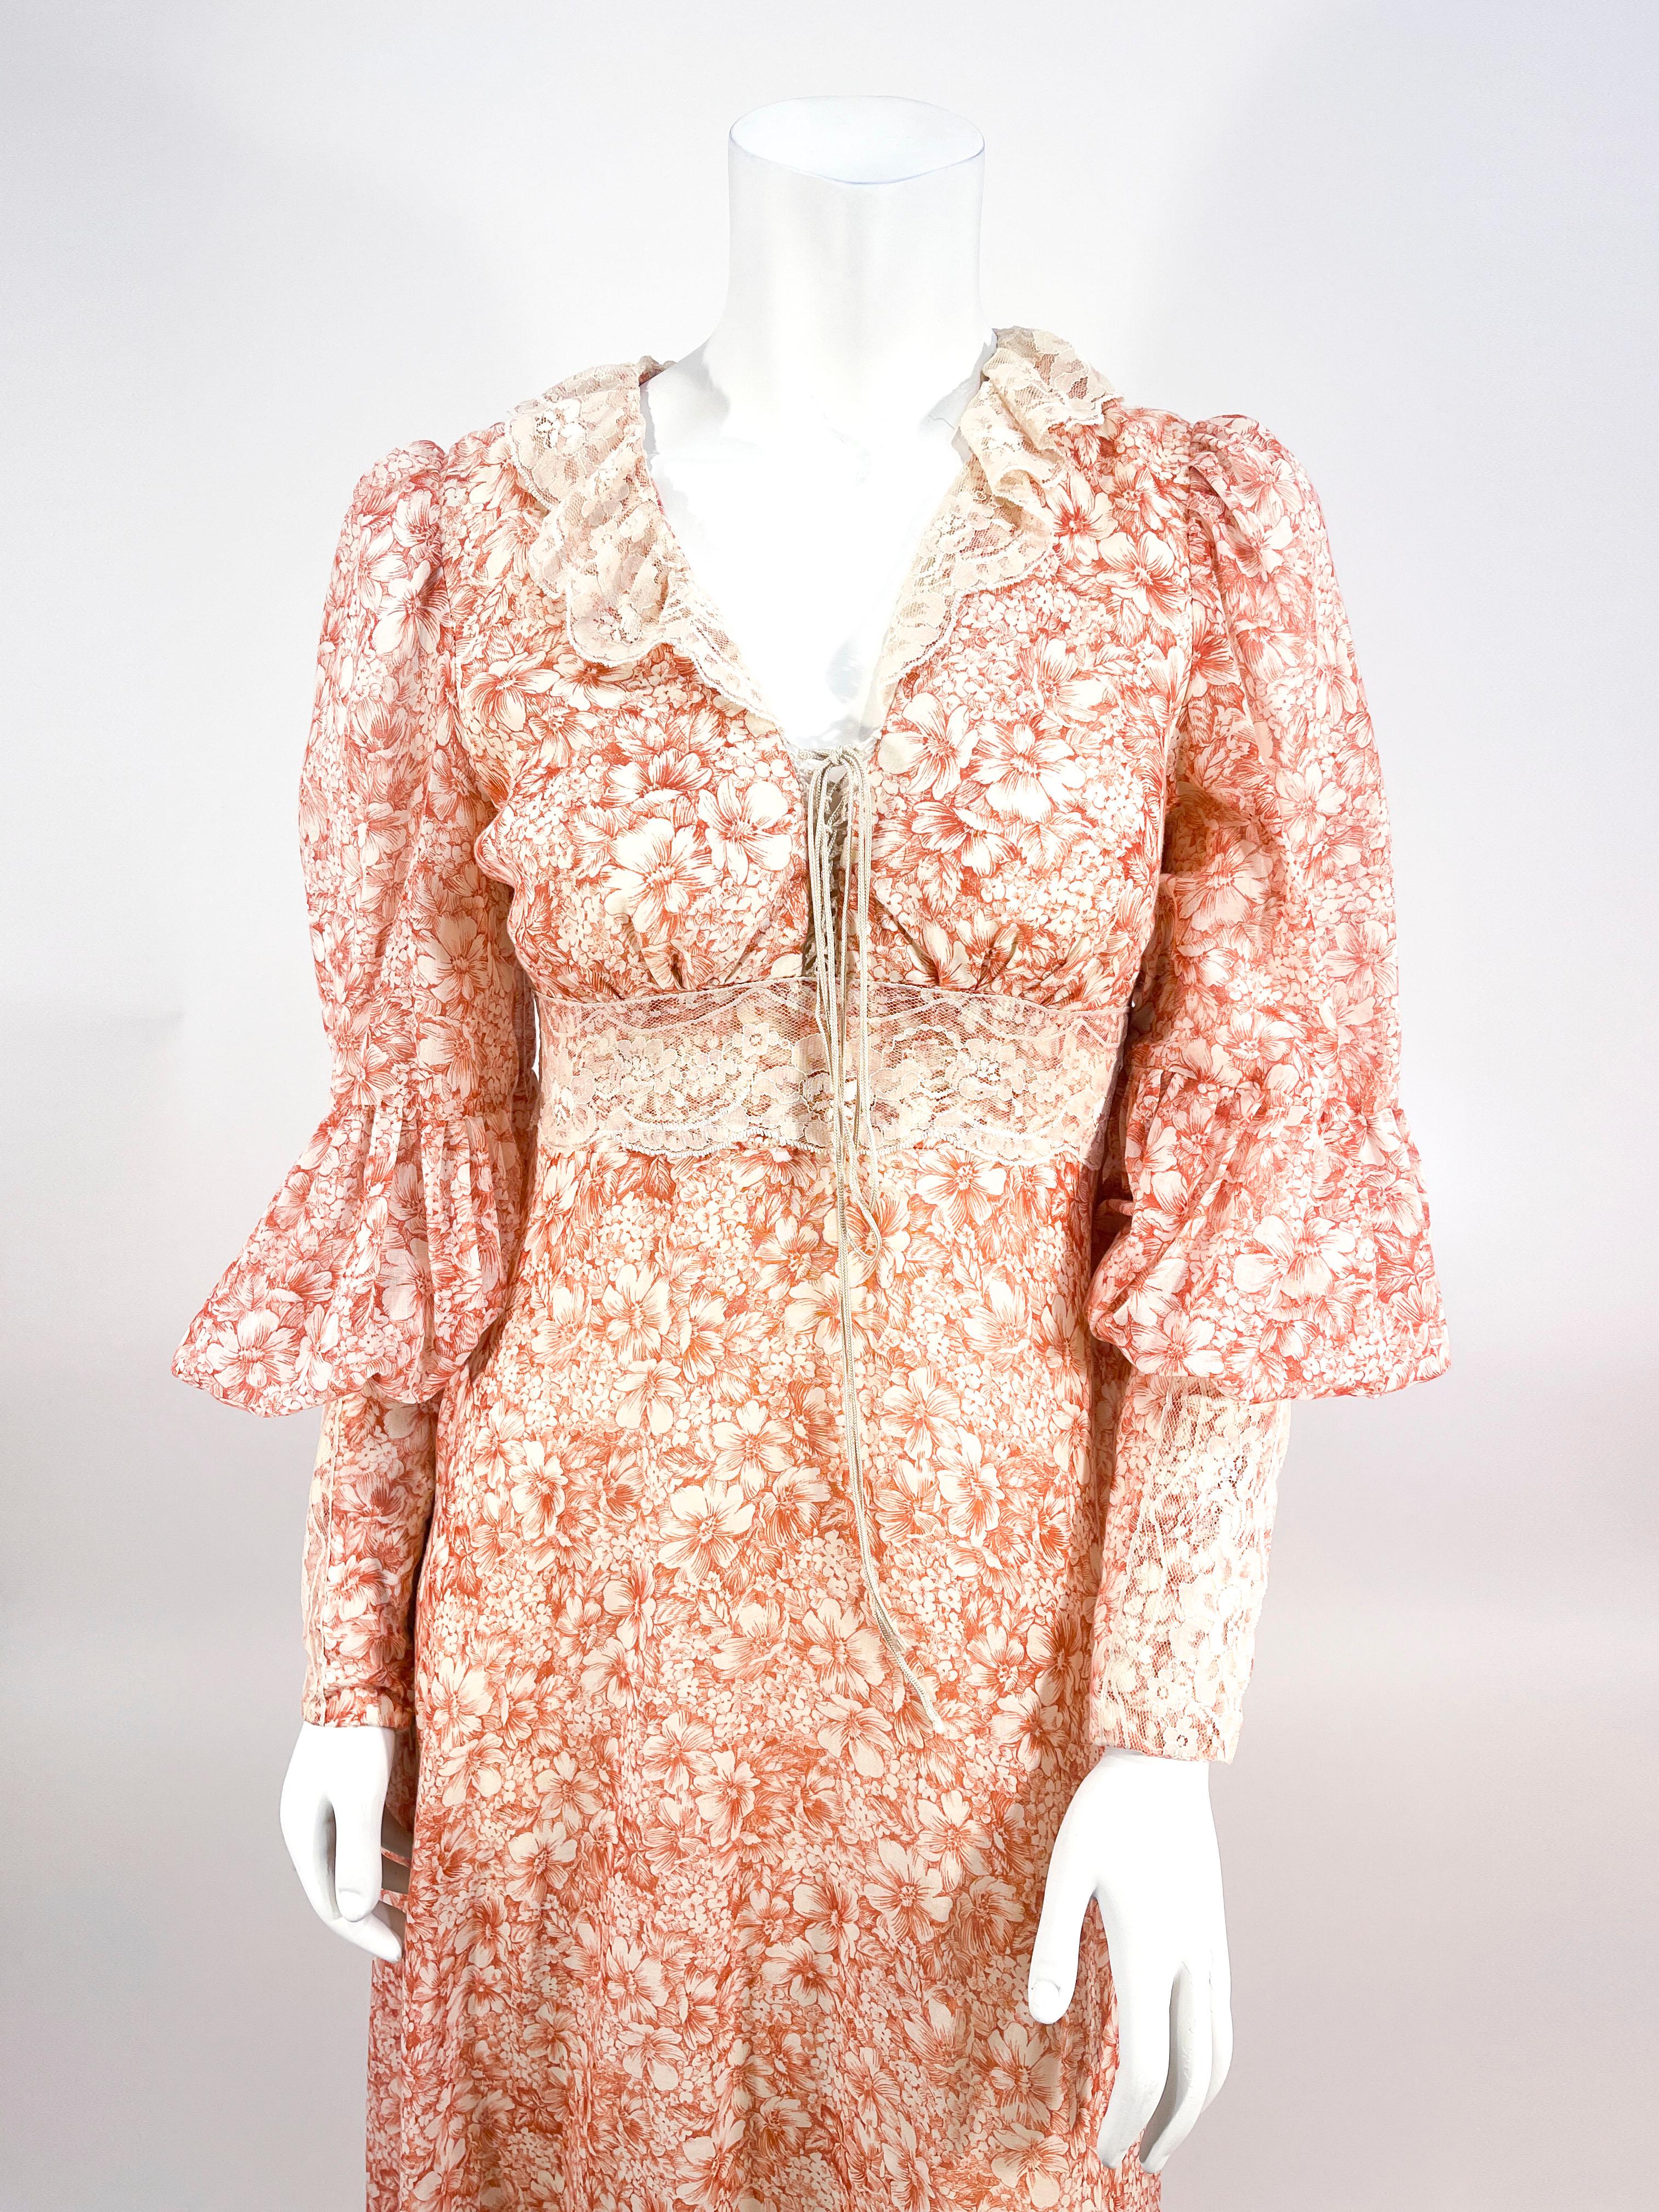 gunne Sax des années 1970 Robe de jour de style prairie, imprimée de fleurs, de couleur rouille, faite d'un voile de coton fin. Les manches d'évêque complètes ont un large poignet à fermeture éclair terminé par de la dentelle. La jupe pleine